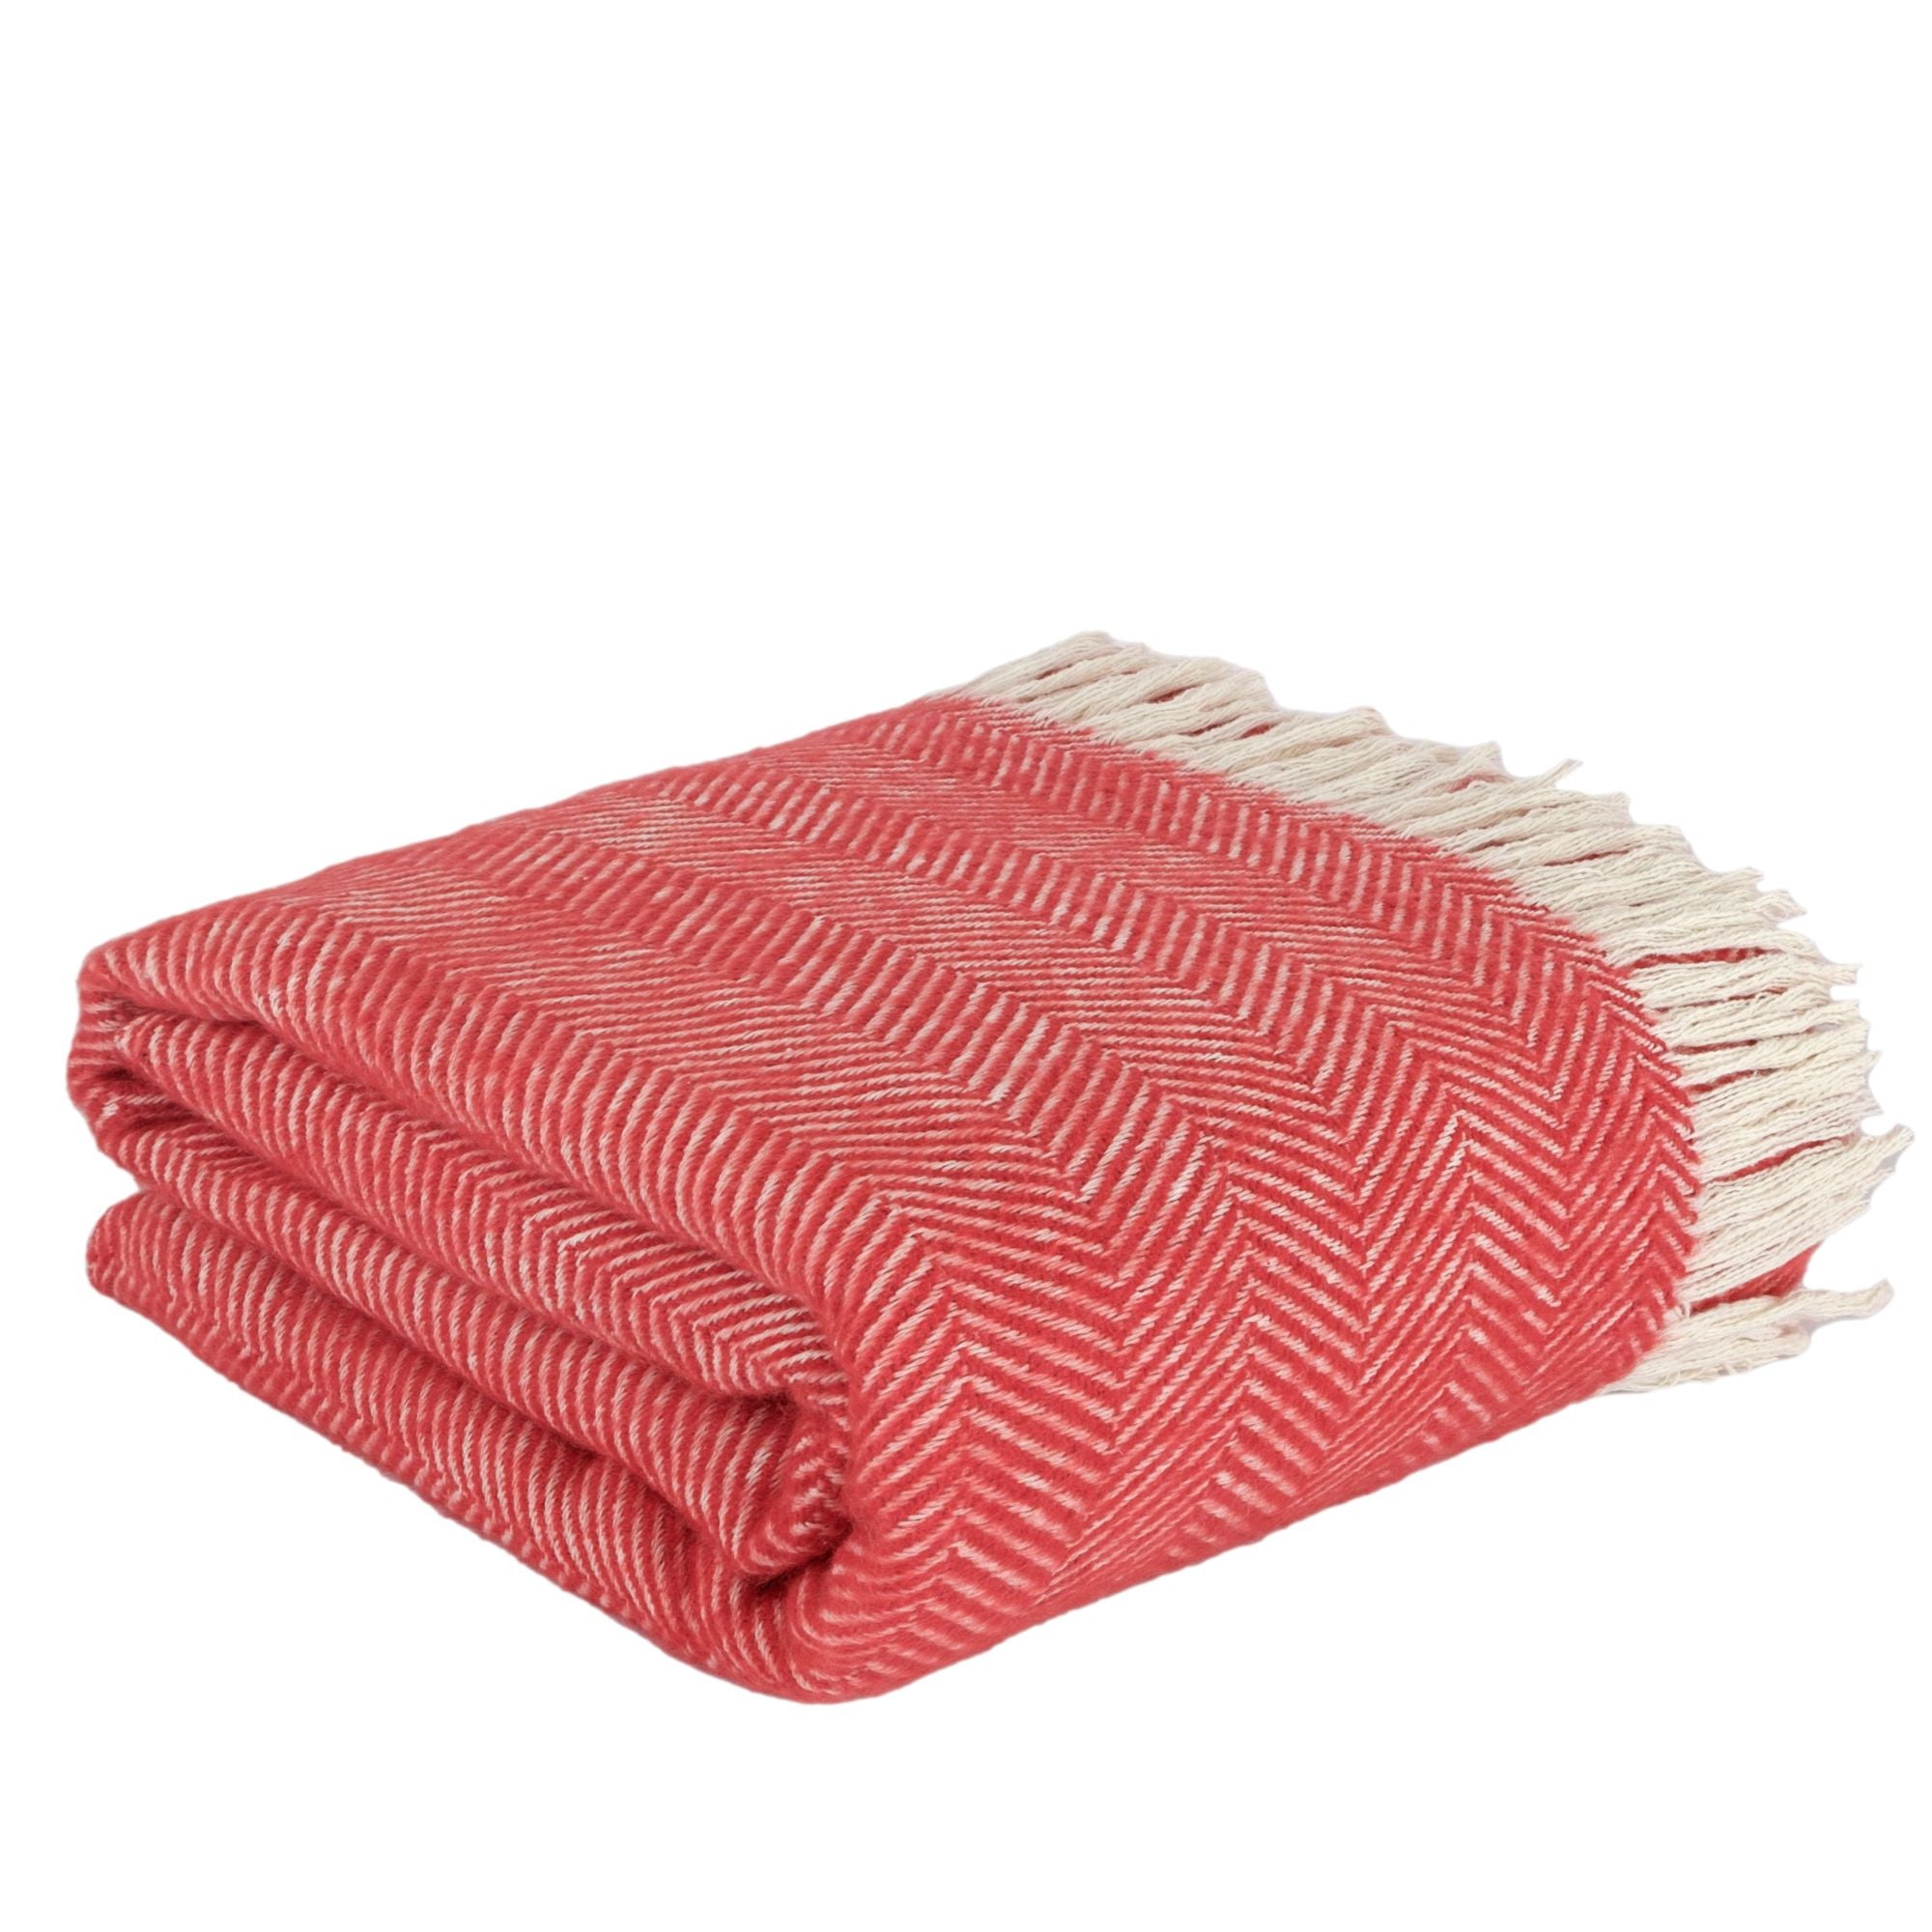 Herringbone Throw Blanket - Red